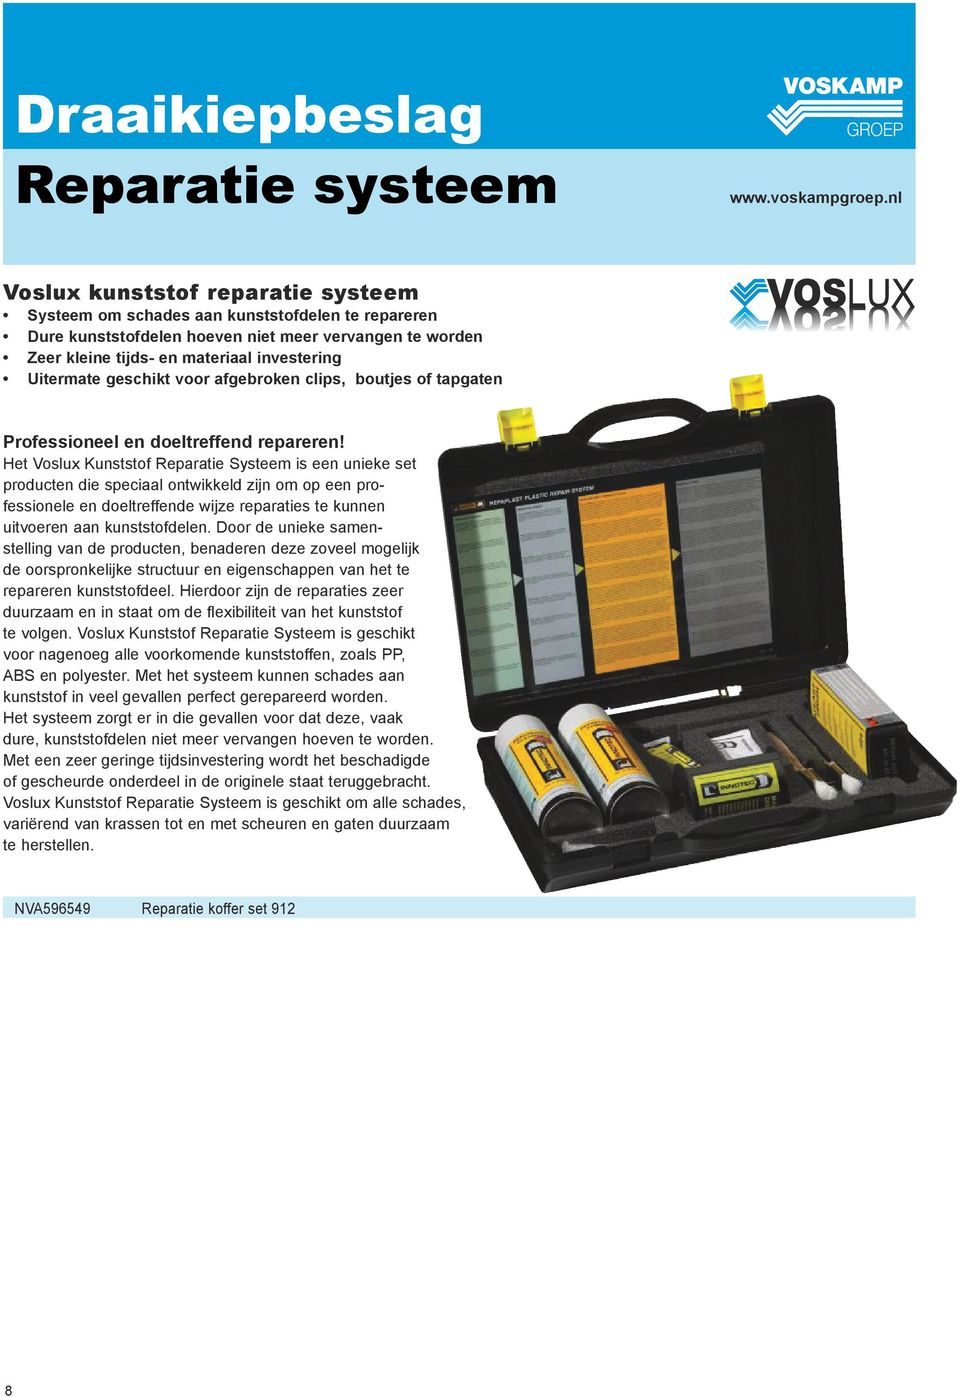 Het Voslux Kunststof Reparatie Systeem is een unieke set producten die speciaal ontwikkeld zijn om op een professionele en doeltreffende wijze reparaties te kunnen uitvoeren aan kunststofdelen.